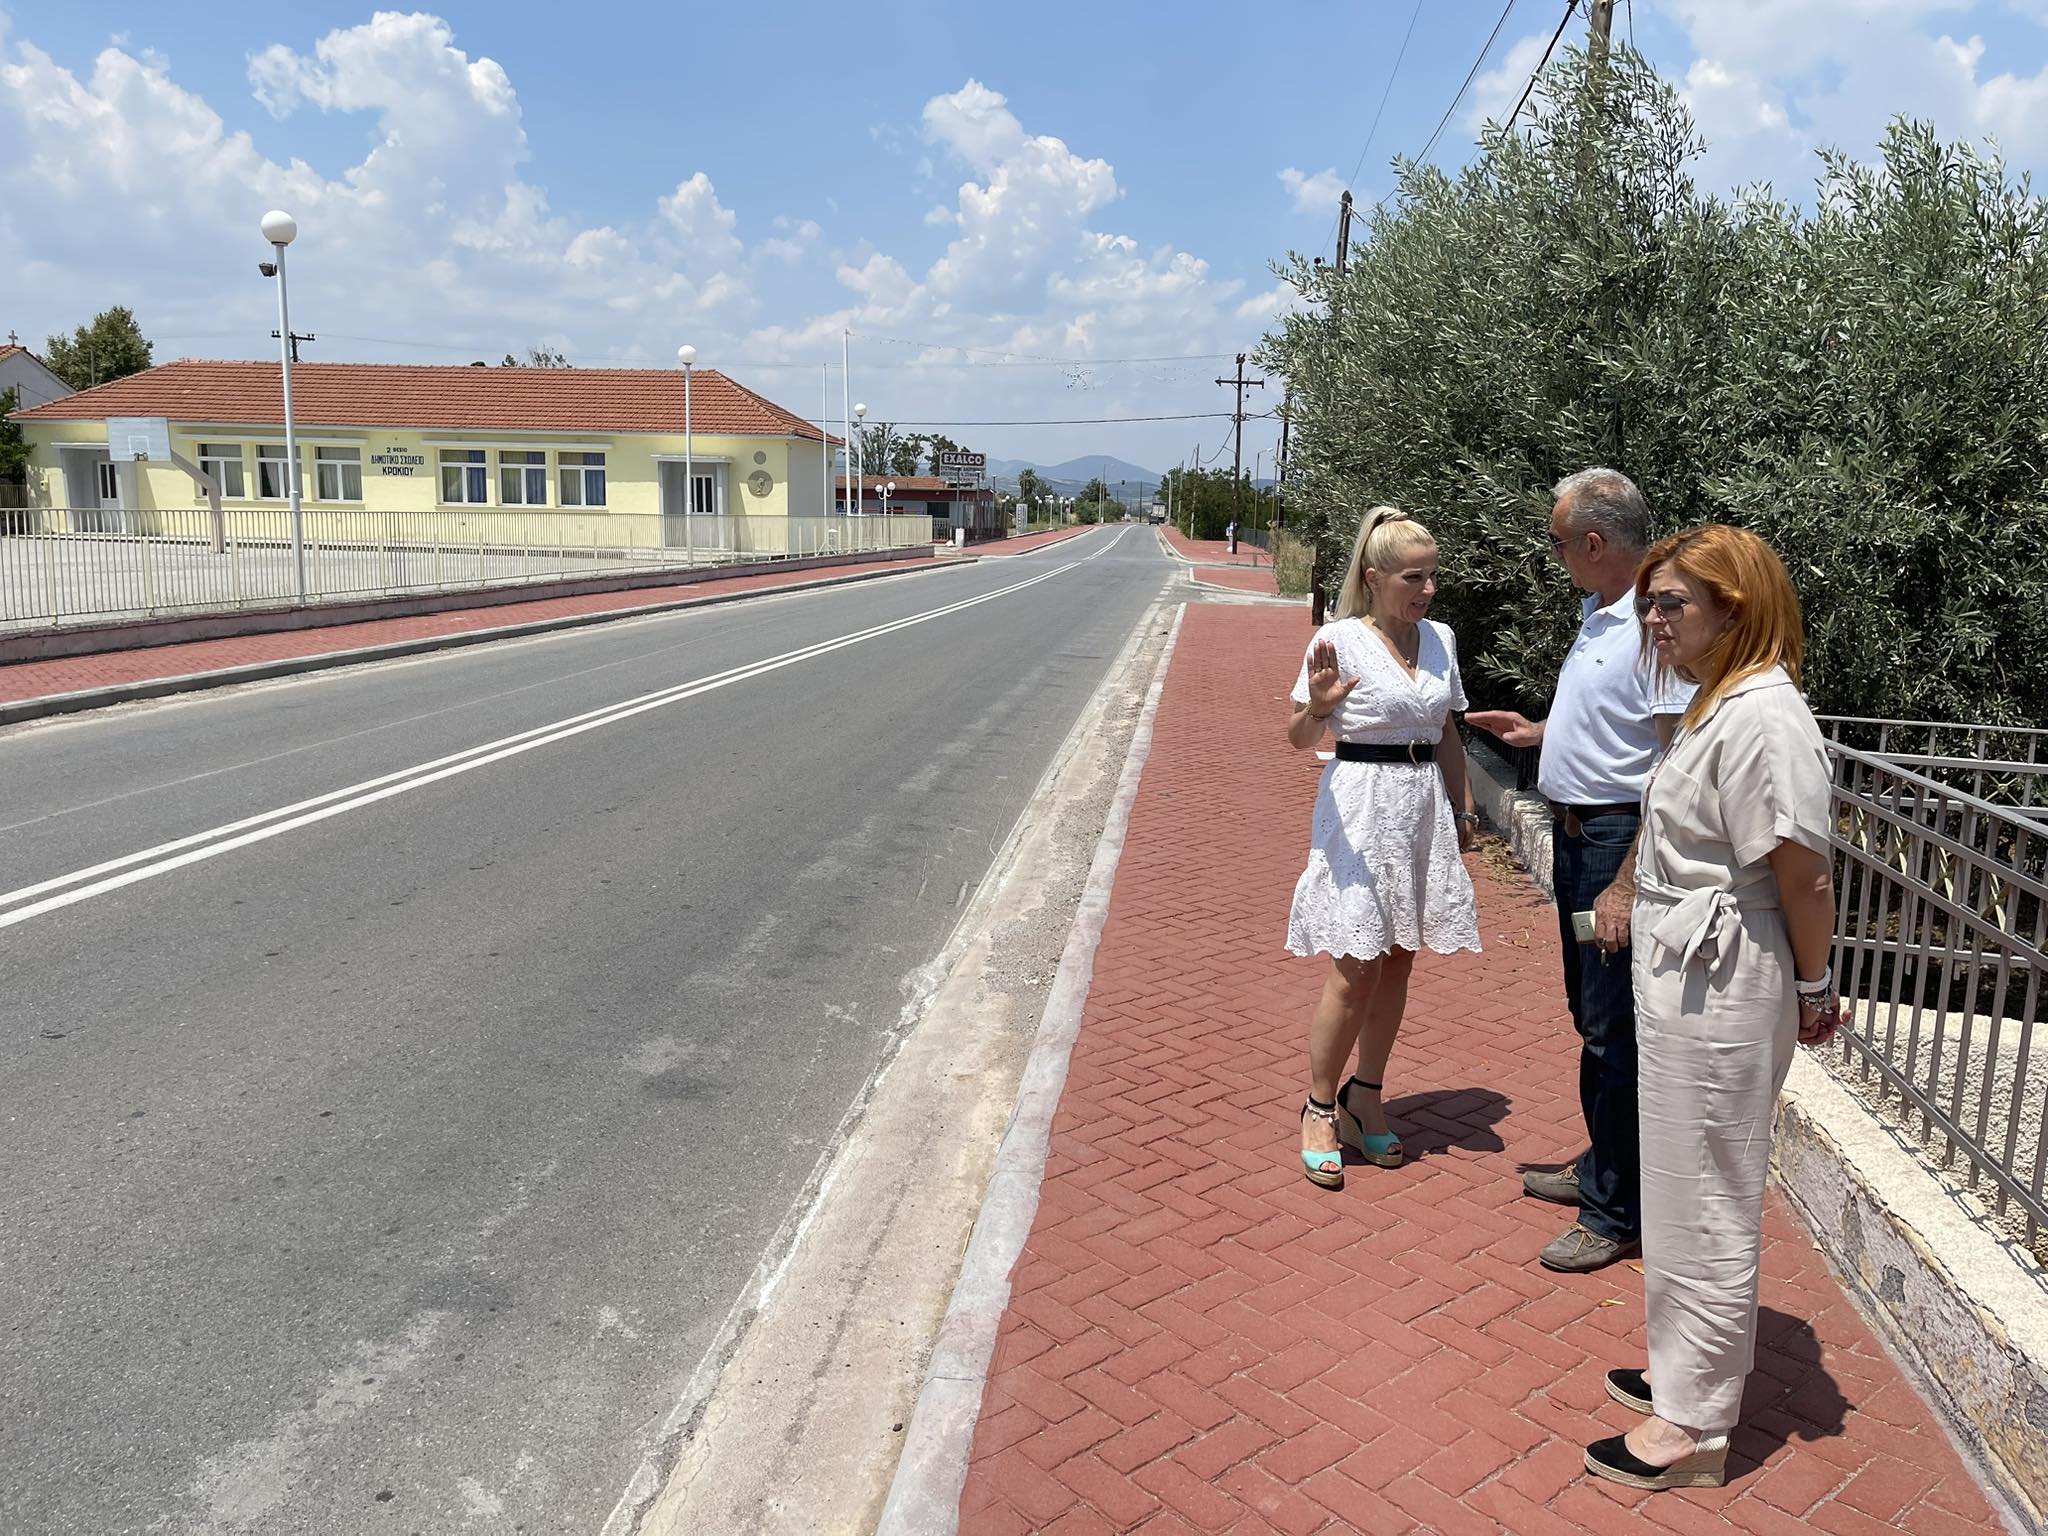 Ολοκληρώθηκε η κατασκευή κρασπέδων και πεζοδρομίων στο Κρόκιο από την Περιφέρεια Θεσσαλίας